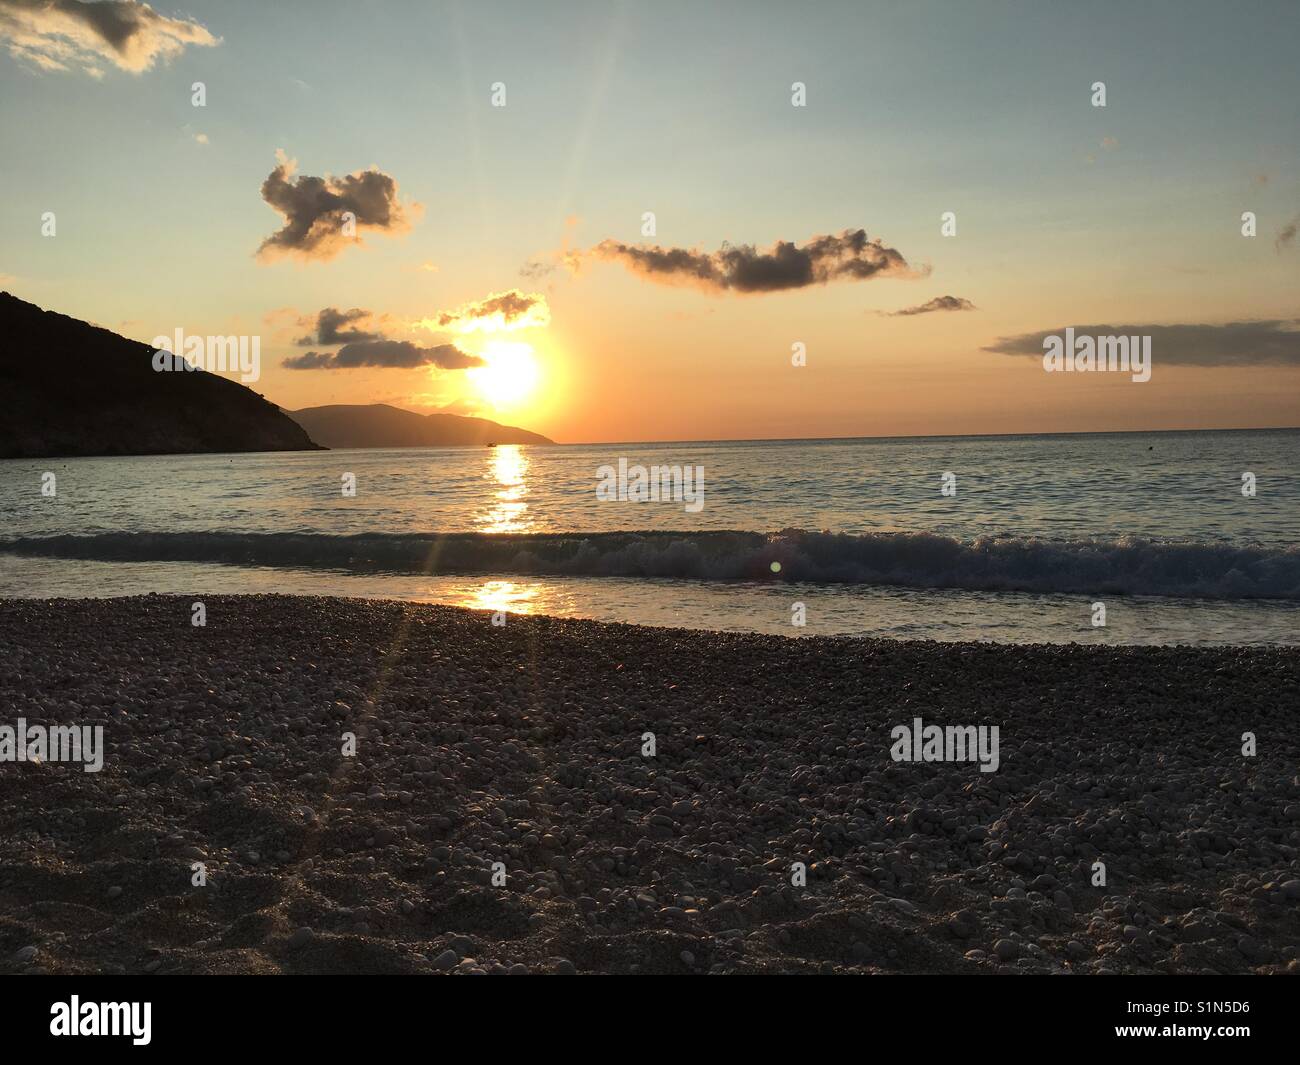 Sunset on Myrtos beach featured in film Captain Corelli's Mandolin on beautiful island of Kefalonia in Greece Stock Photo